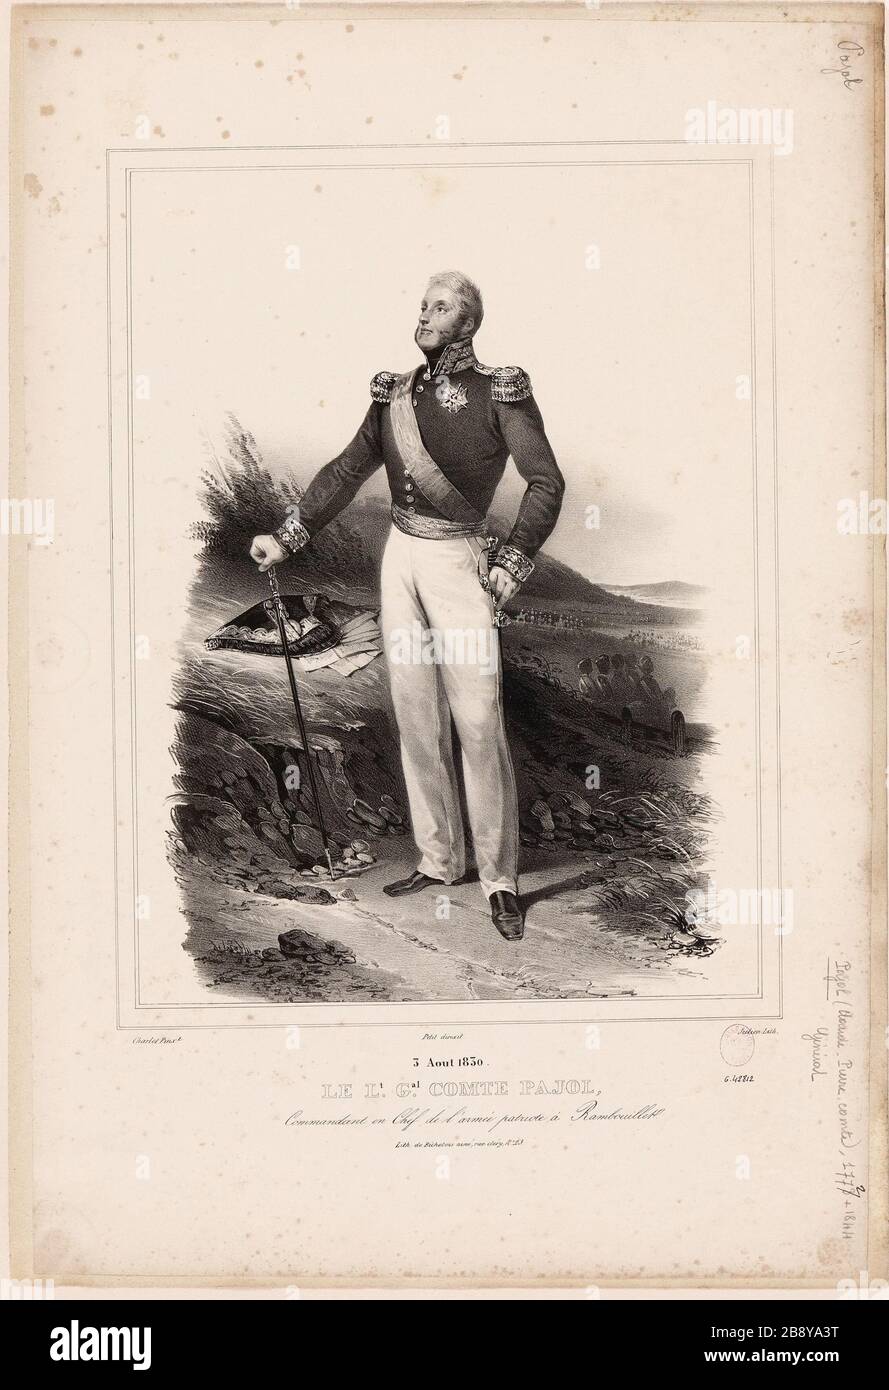 August 1830 / Lt. Gal. Count Pajol. / Kommandeur der Patriotenarmee in Rambouillet. Stockfoto